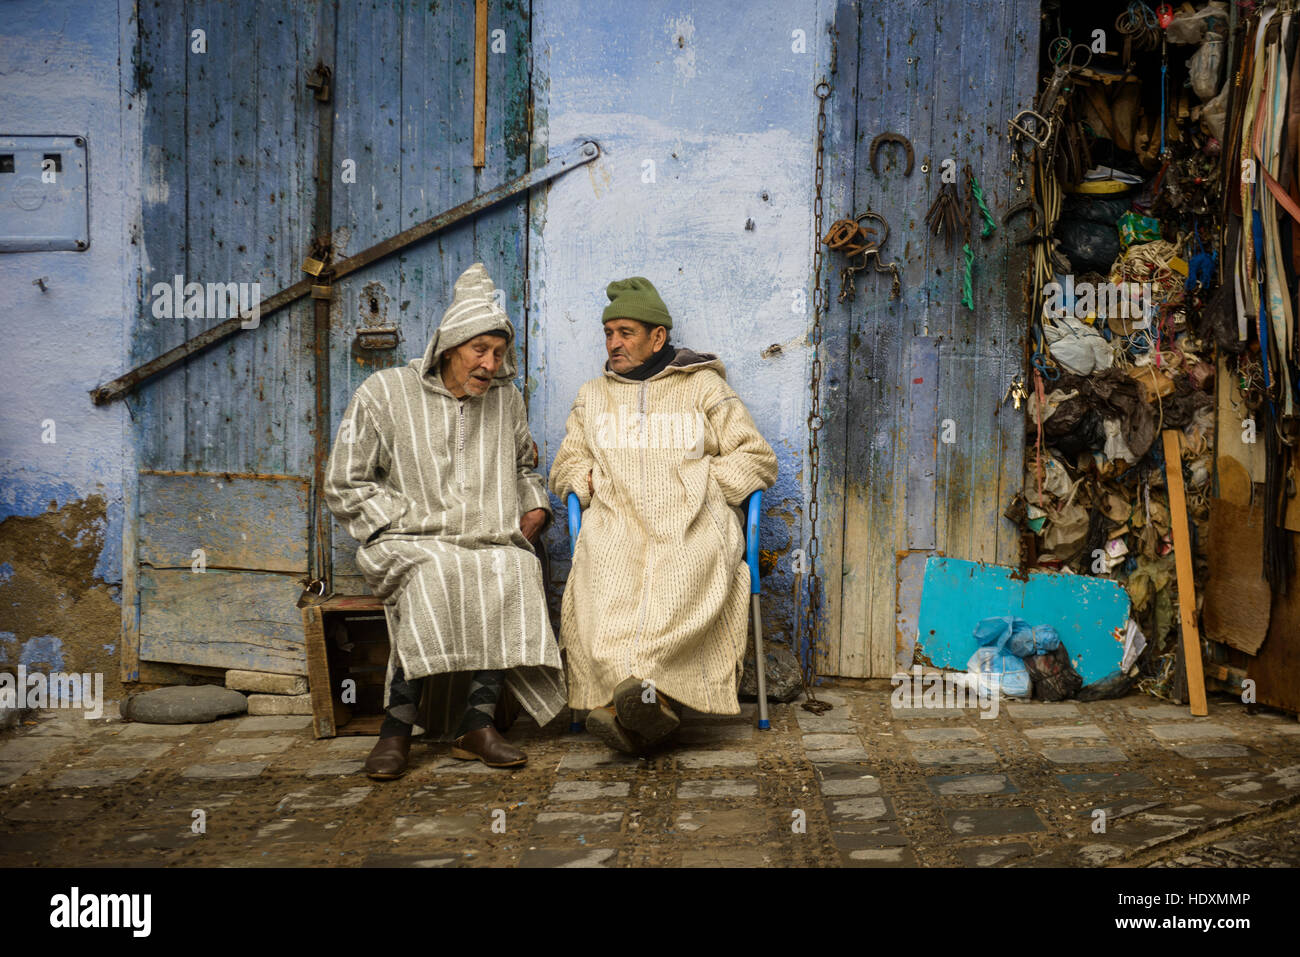 Rues et ruelles de la médina de Chefchaouen, Maroc Banque D'Images